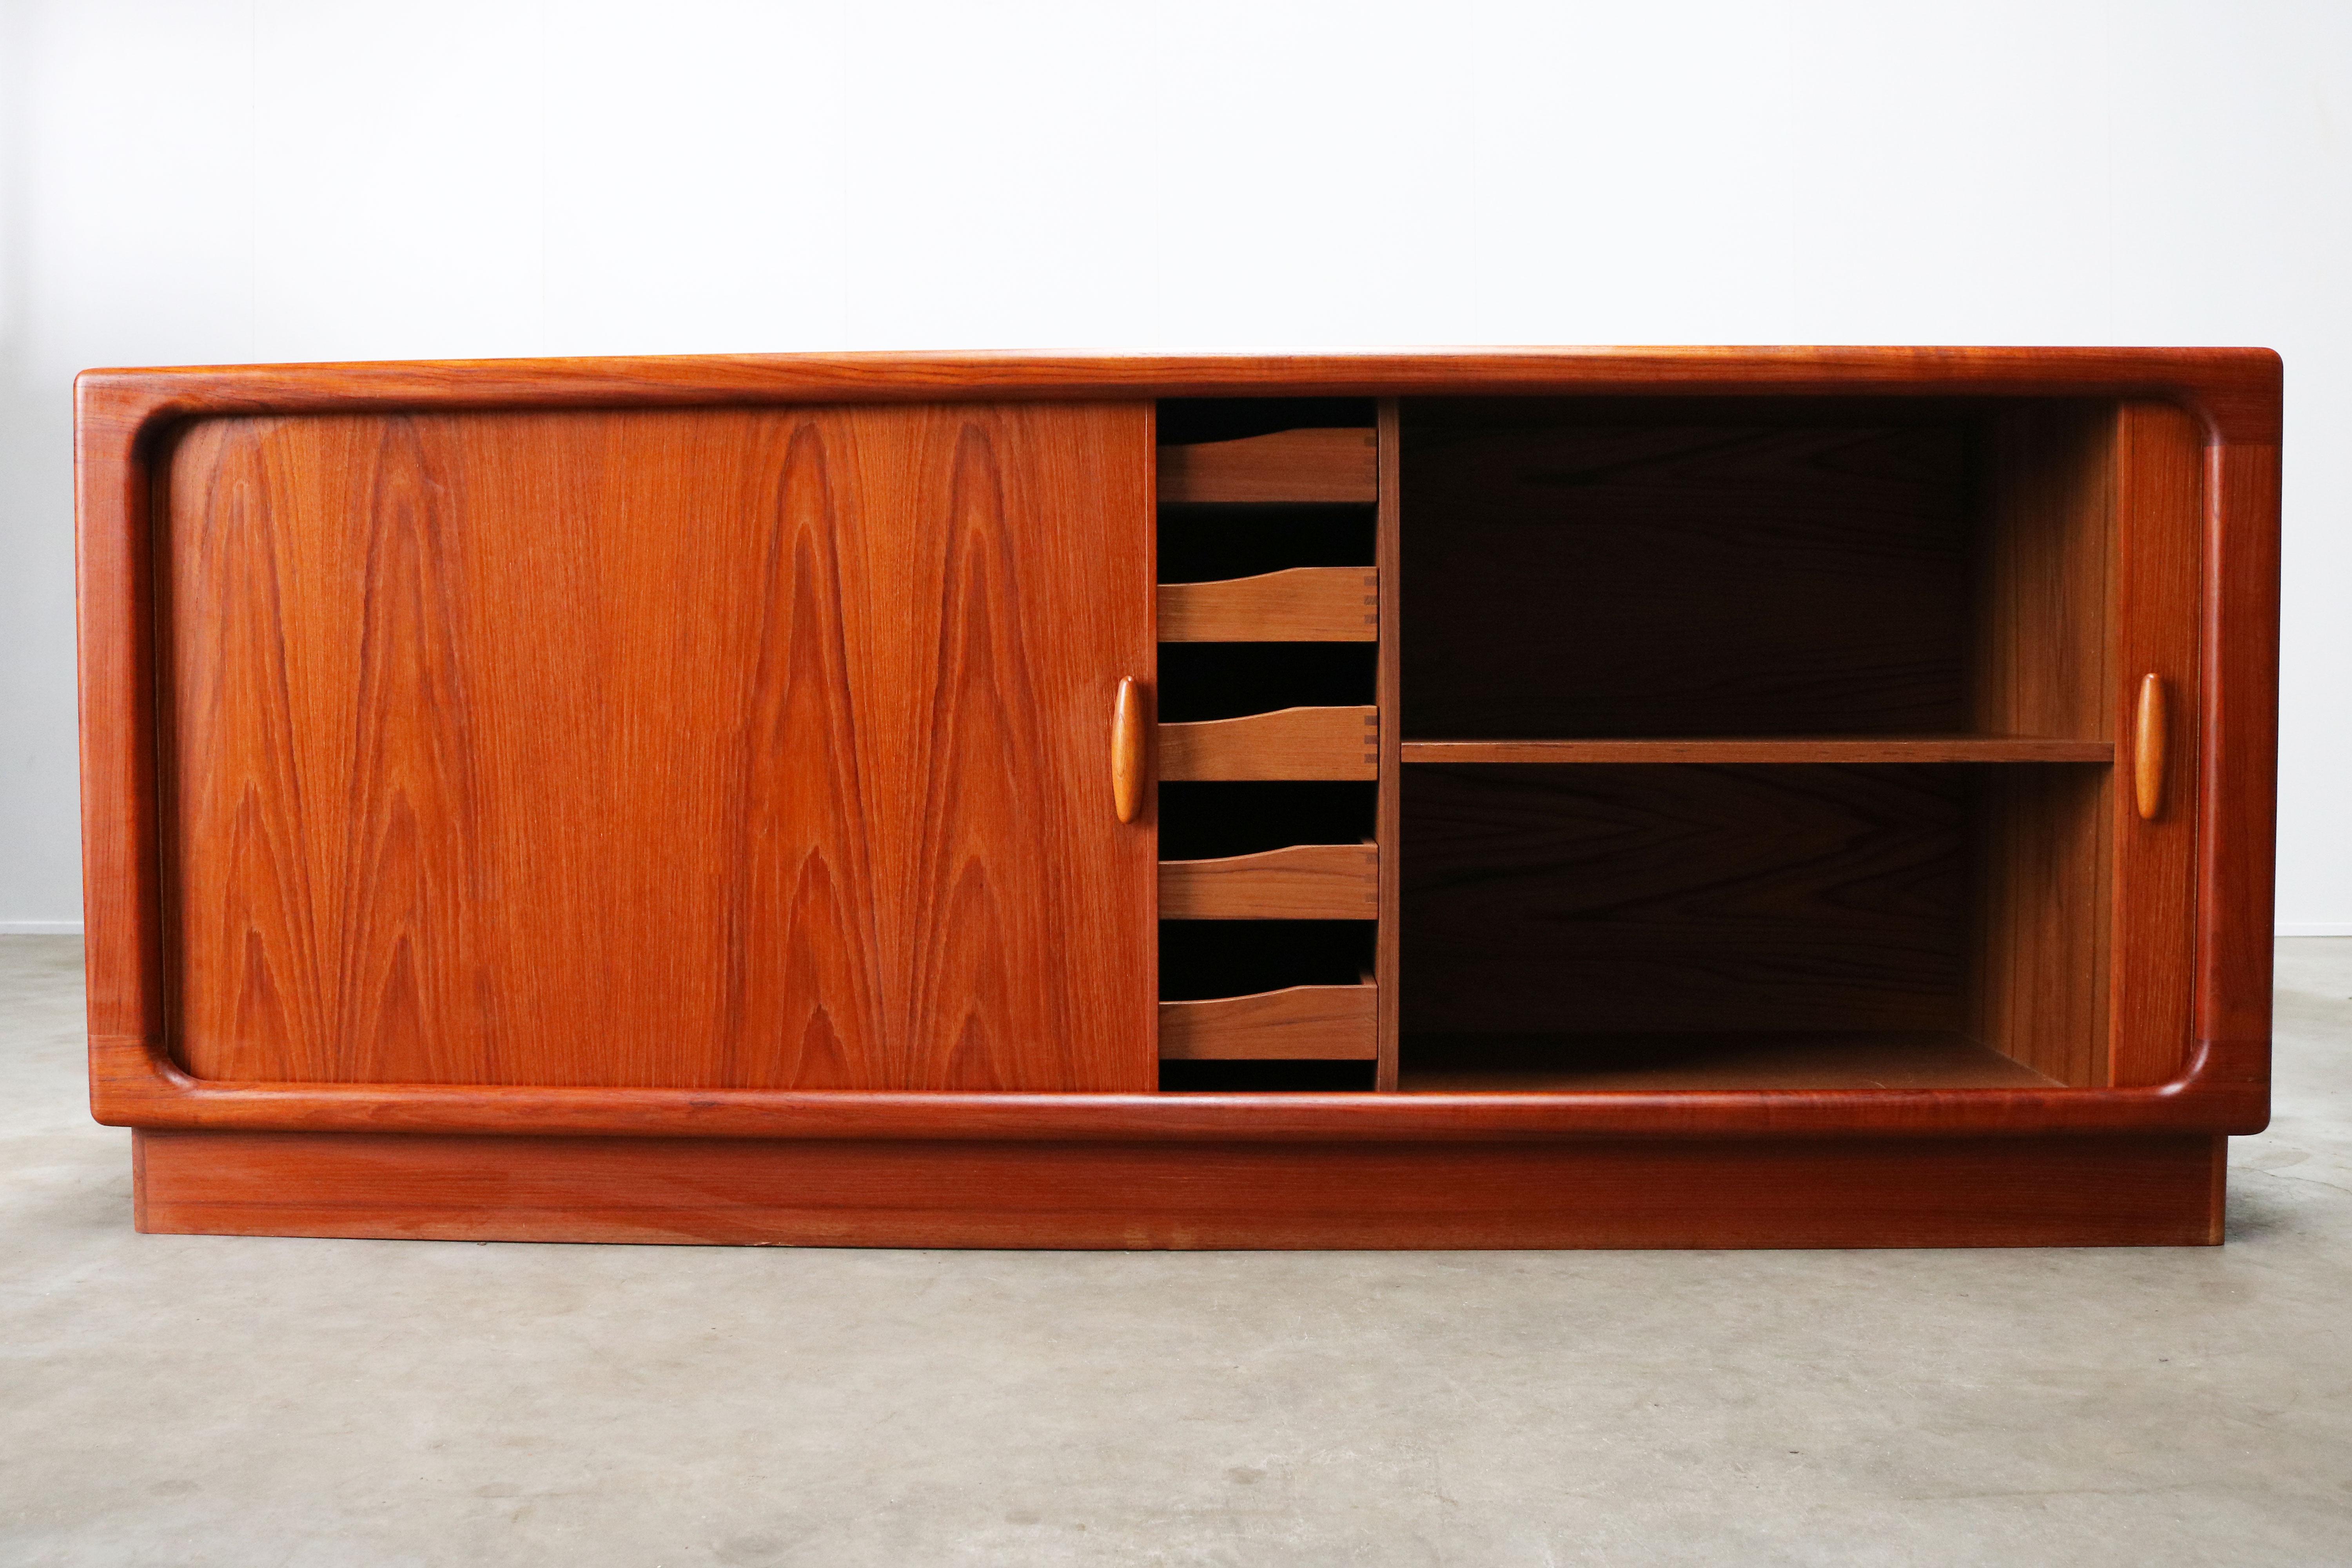 Mid-Century Modern Danish Design Credenza / Sideboard by Dyrlund 1950s Teak Organic Tambour Doors